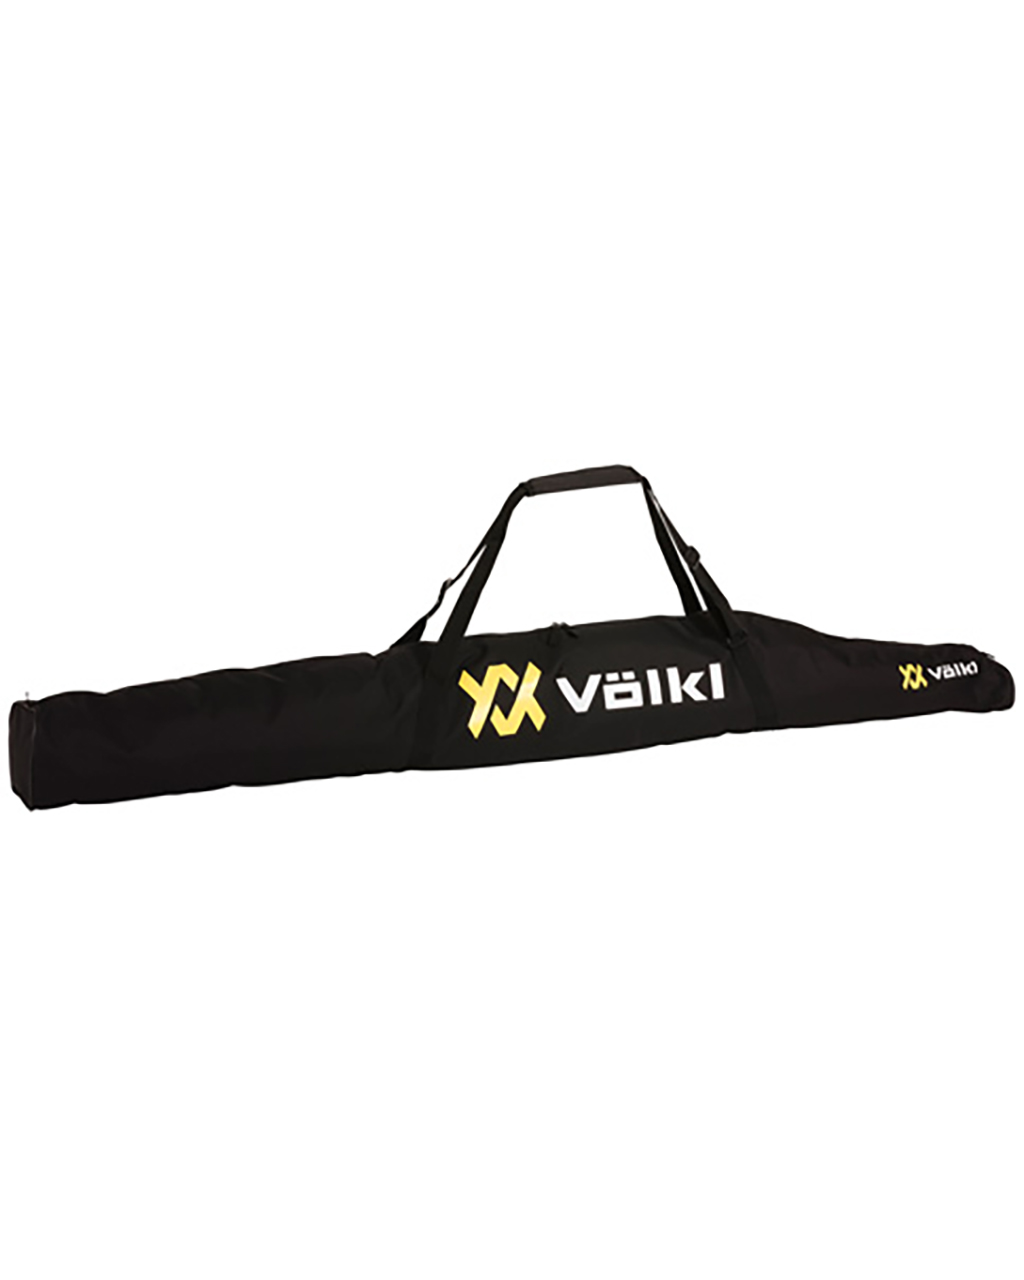 Völkl Classic Single Ski Bag 175cm Black